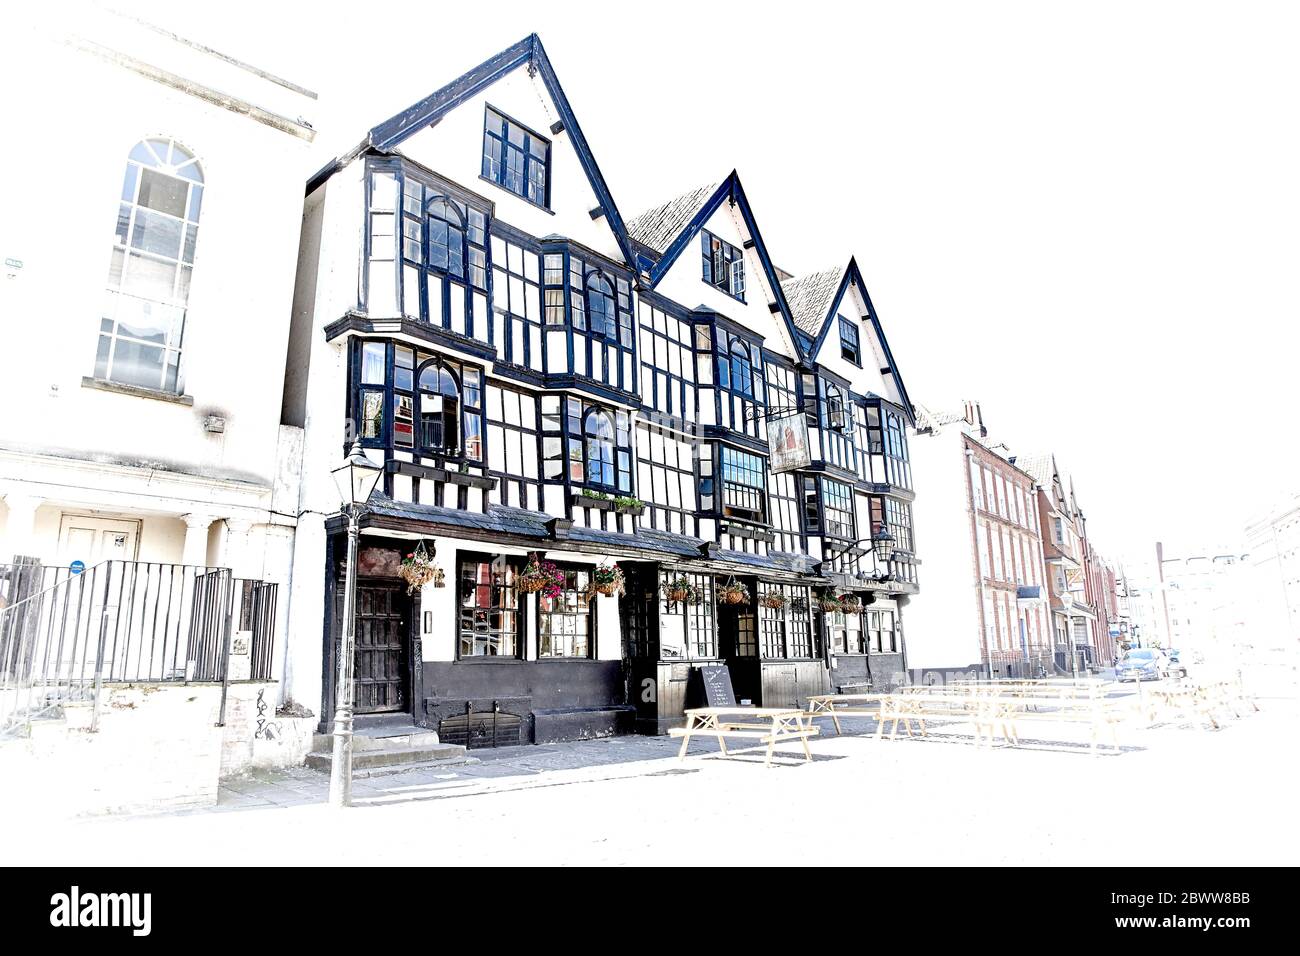 The Historical Llandoger Trow pub à Bristol, Angleterre, Royaume-Uni Banque D'Images